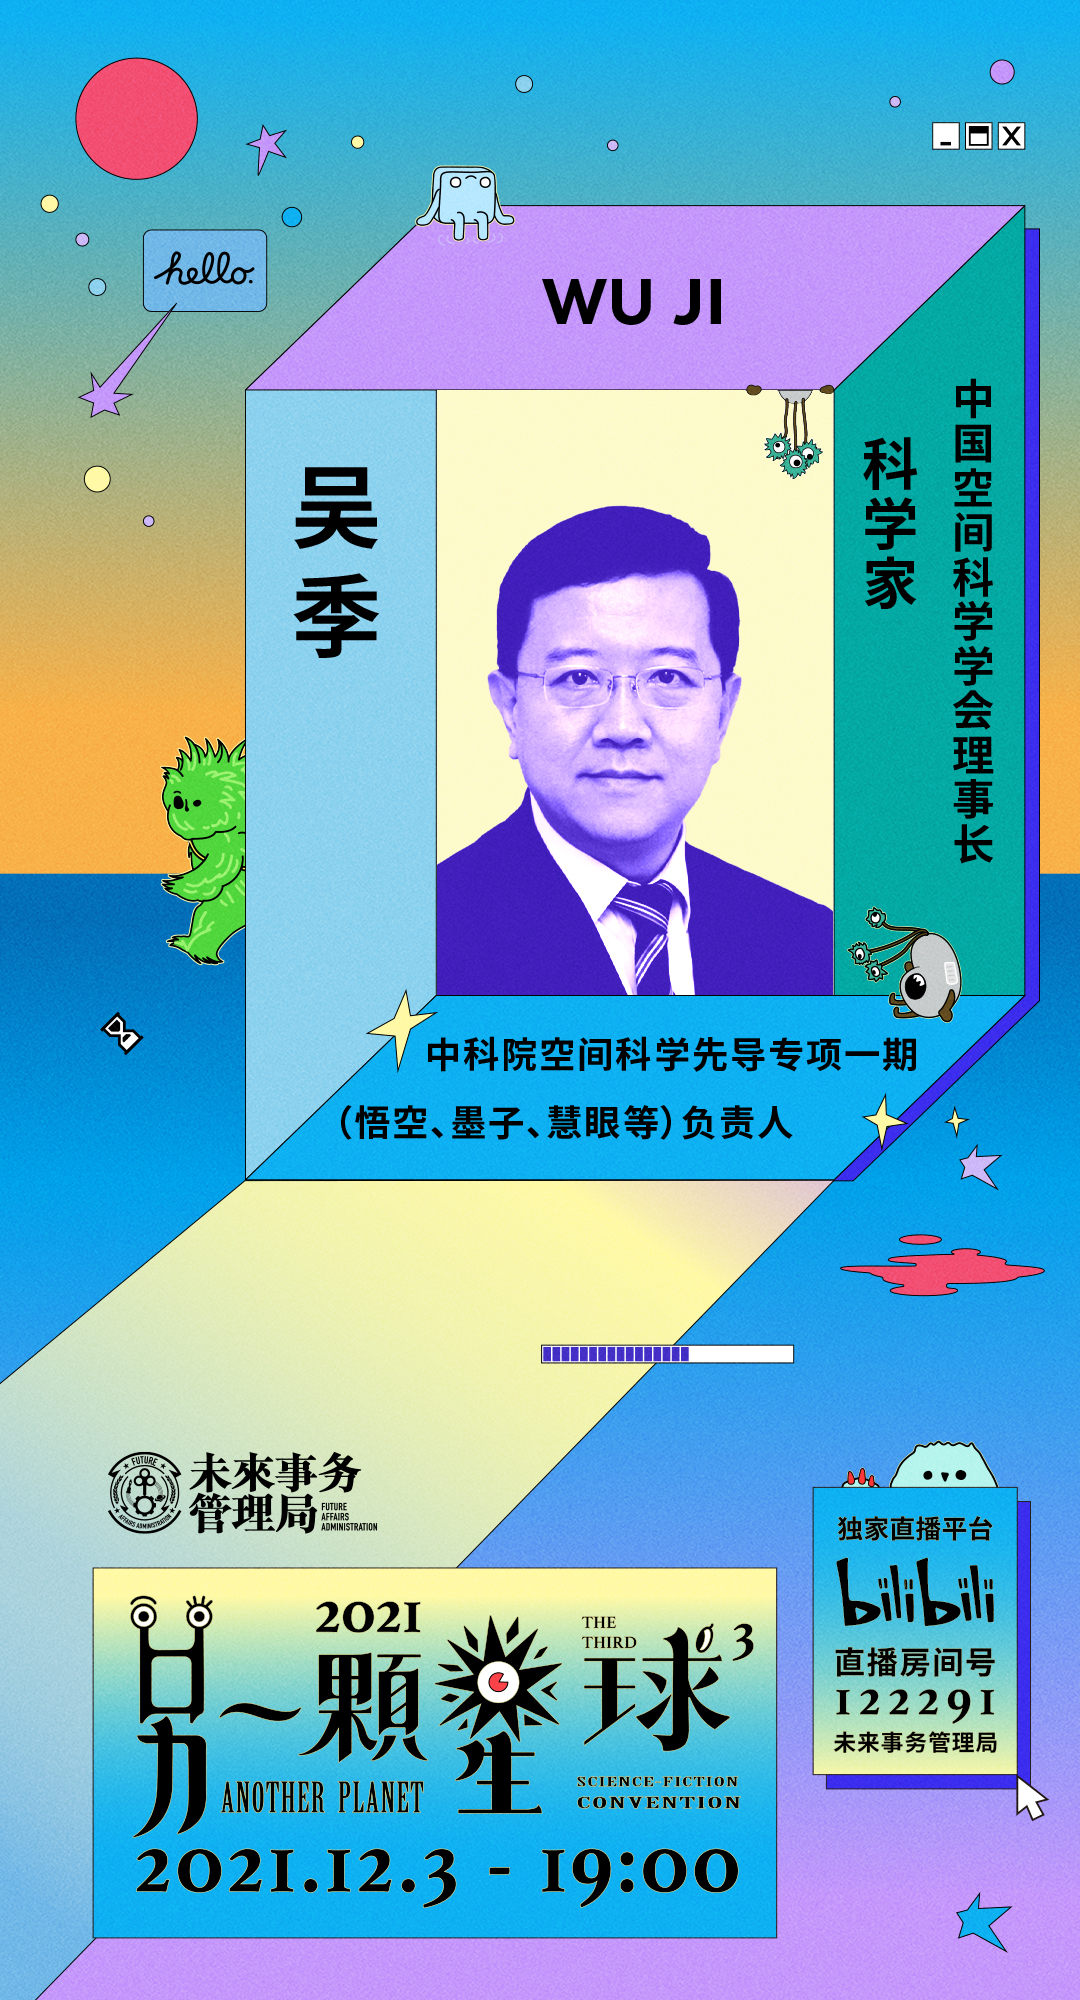 聽吳季講述中國科學家的頂級浪漫：宇宙仍在召喚 | APSFcon